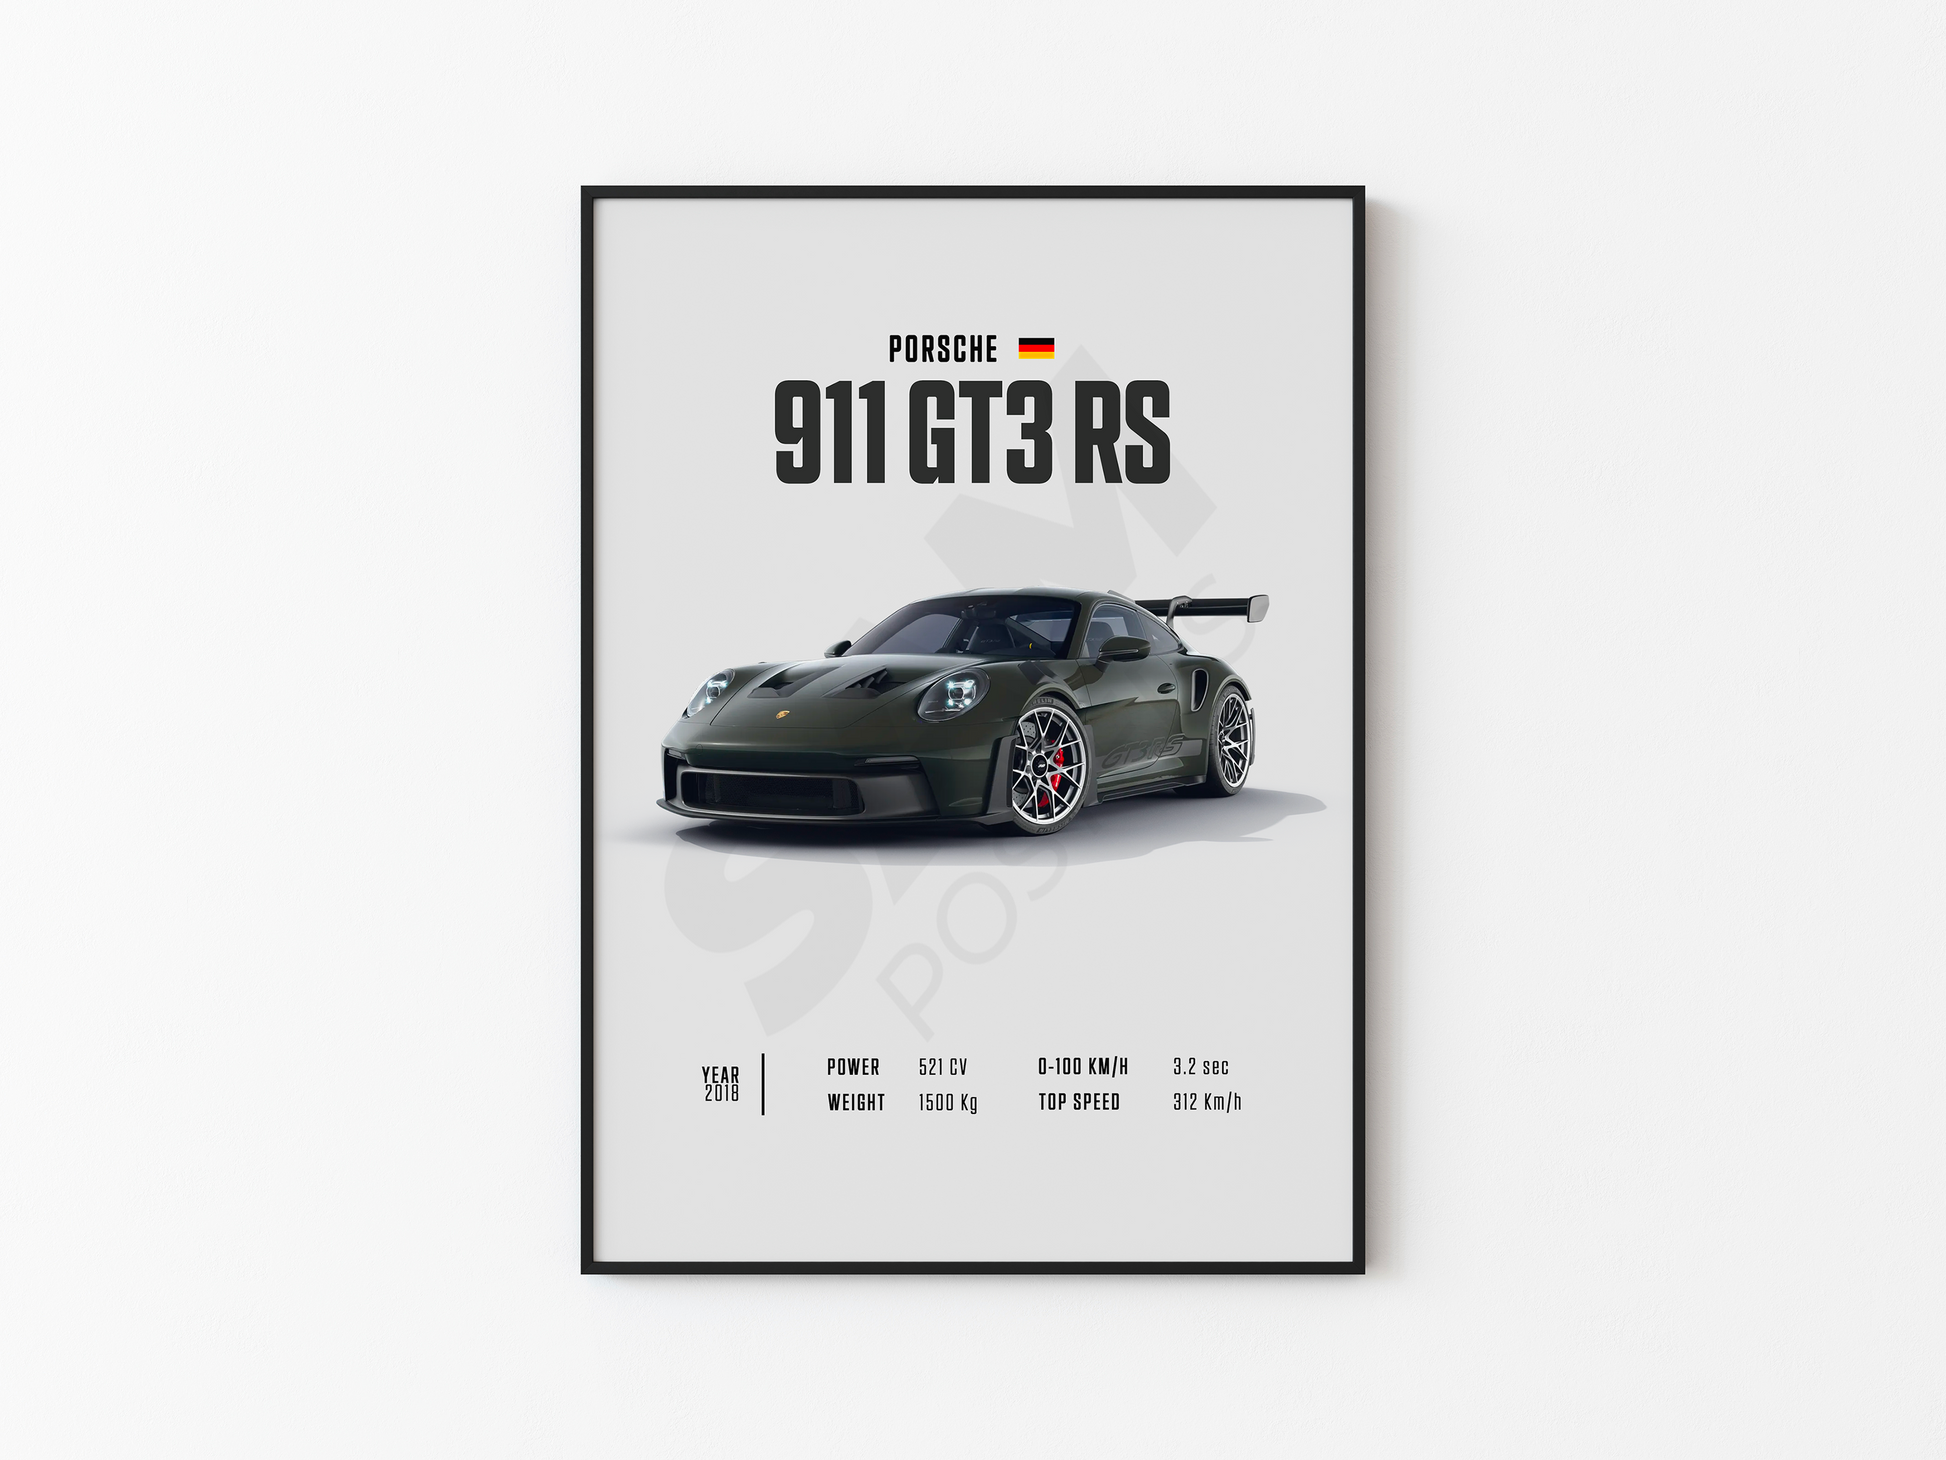 https://samposters.com/cdn/shop/files/Porsche911GT3RS.png?v=1699556120&width=1946